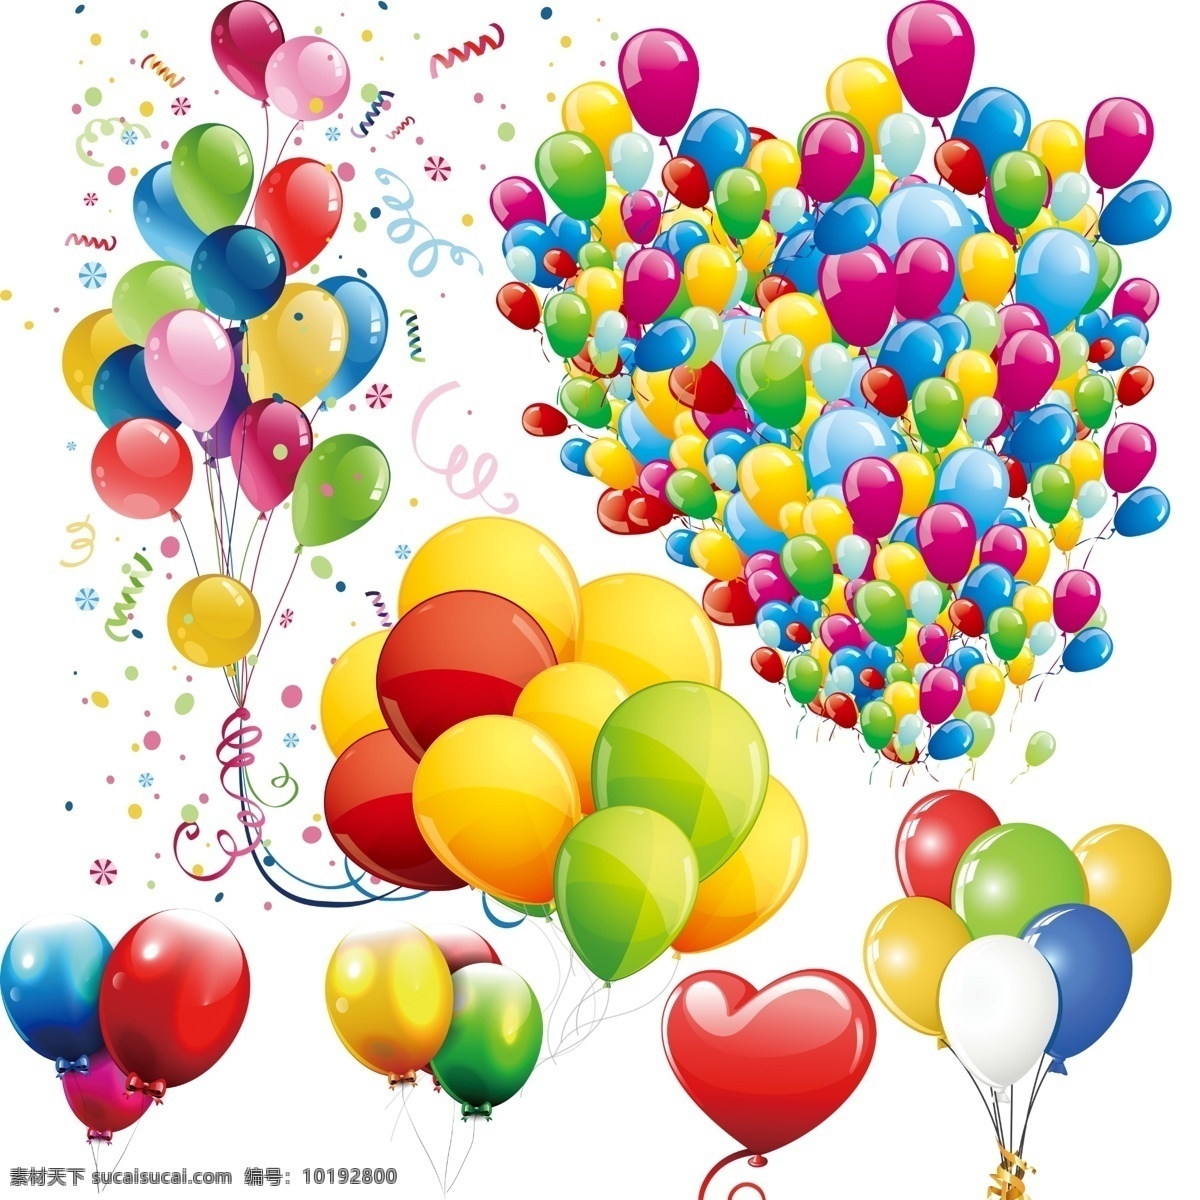 气球 气球束 彩色气球 活动气球 婚庆气球 节日气球 心形气球